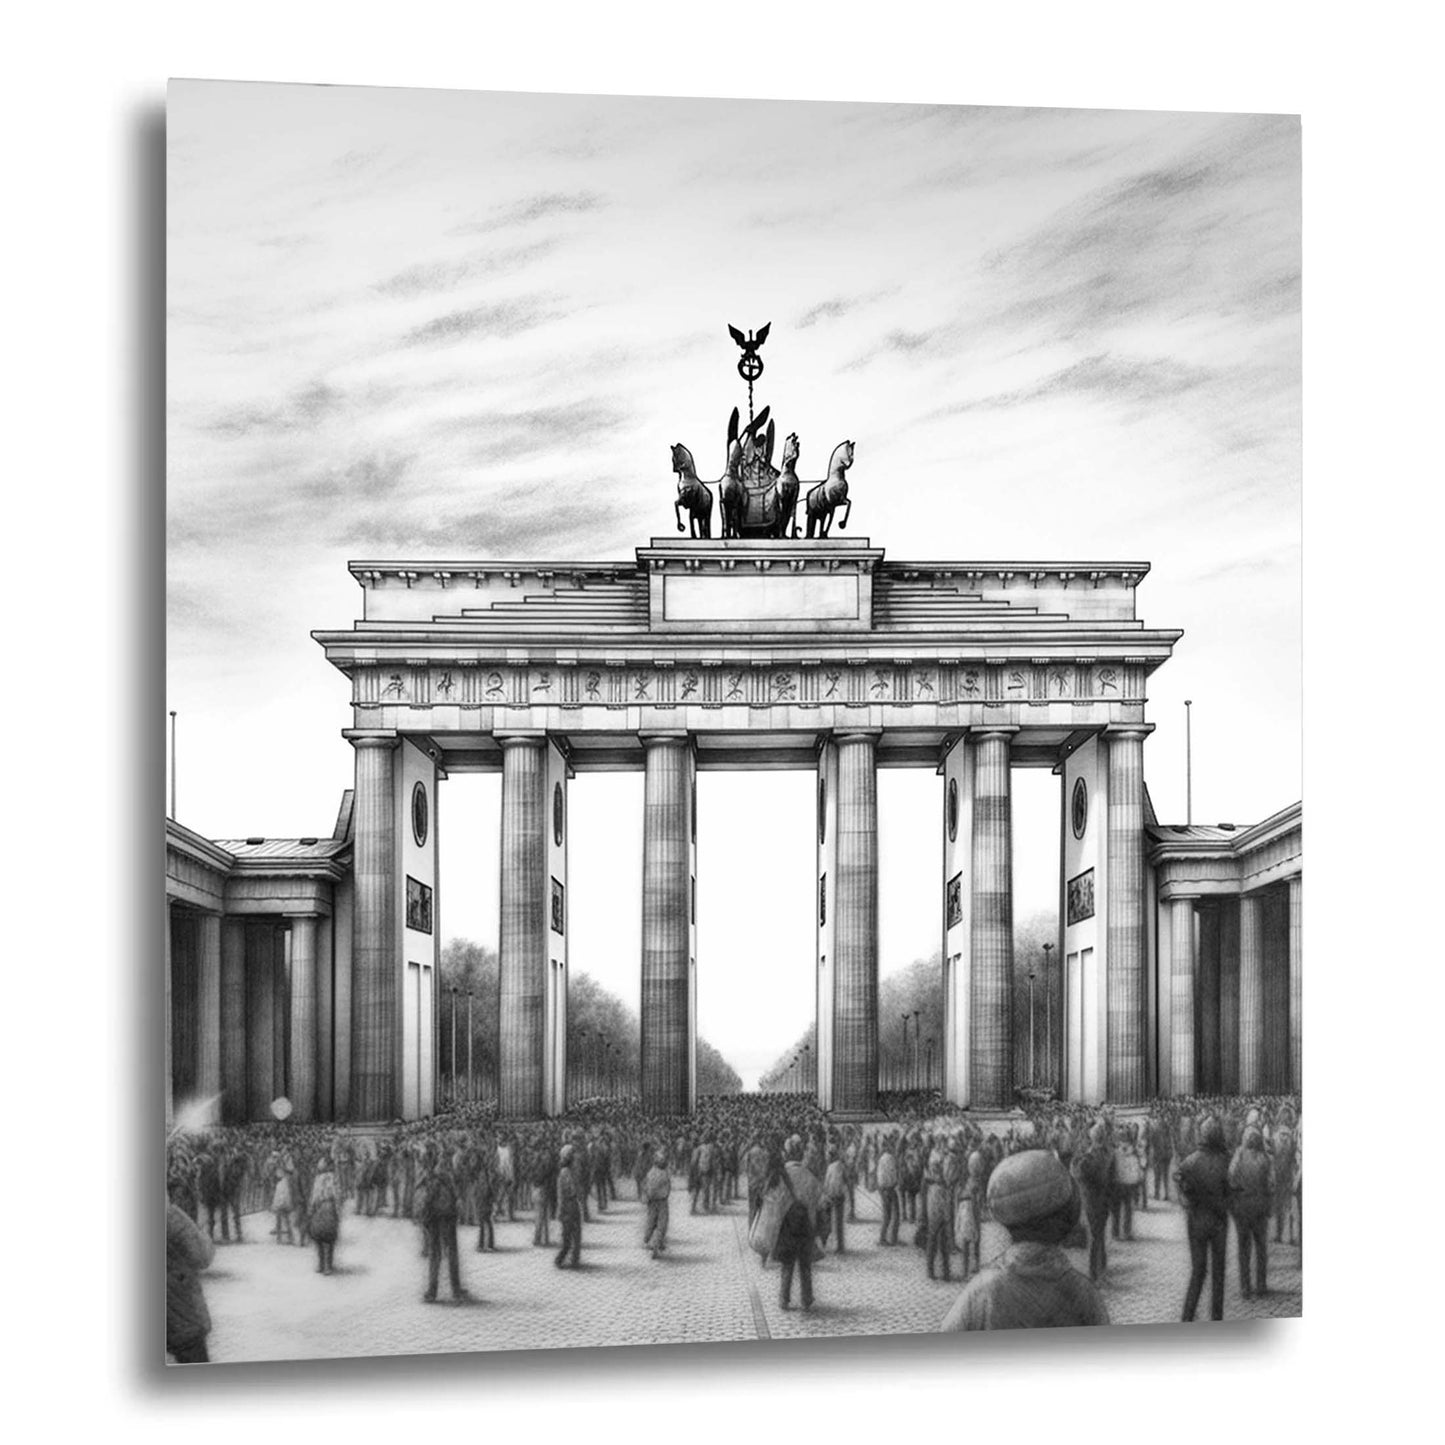 Berlin Brandenburger Tor - Wandbild in der Stilrichtung einer Zeichnung